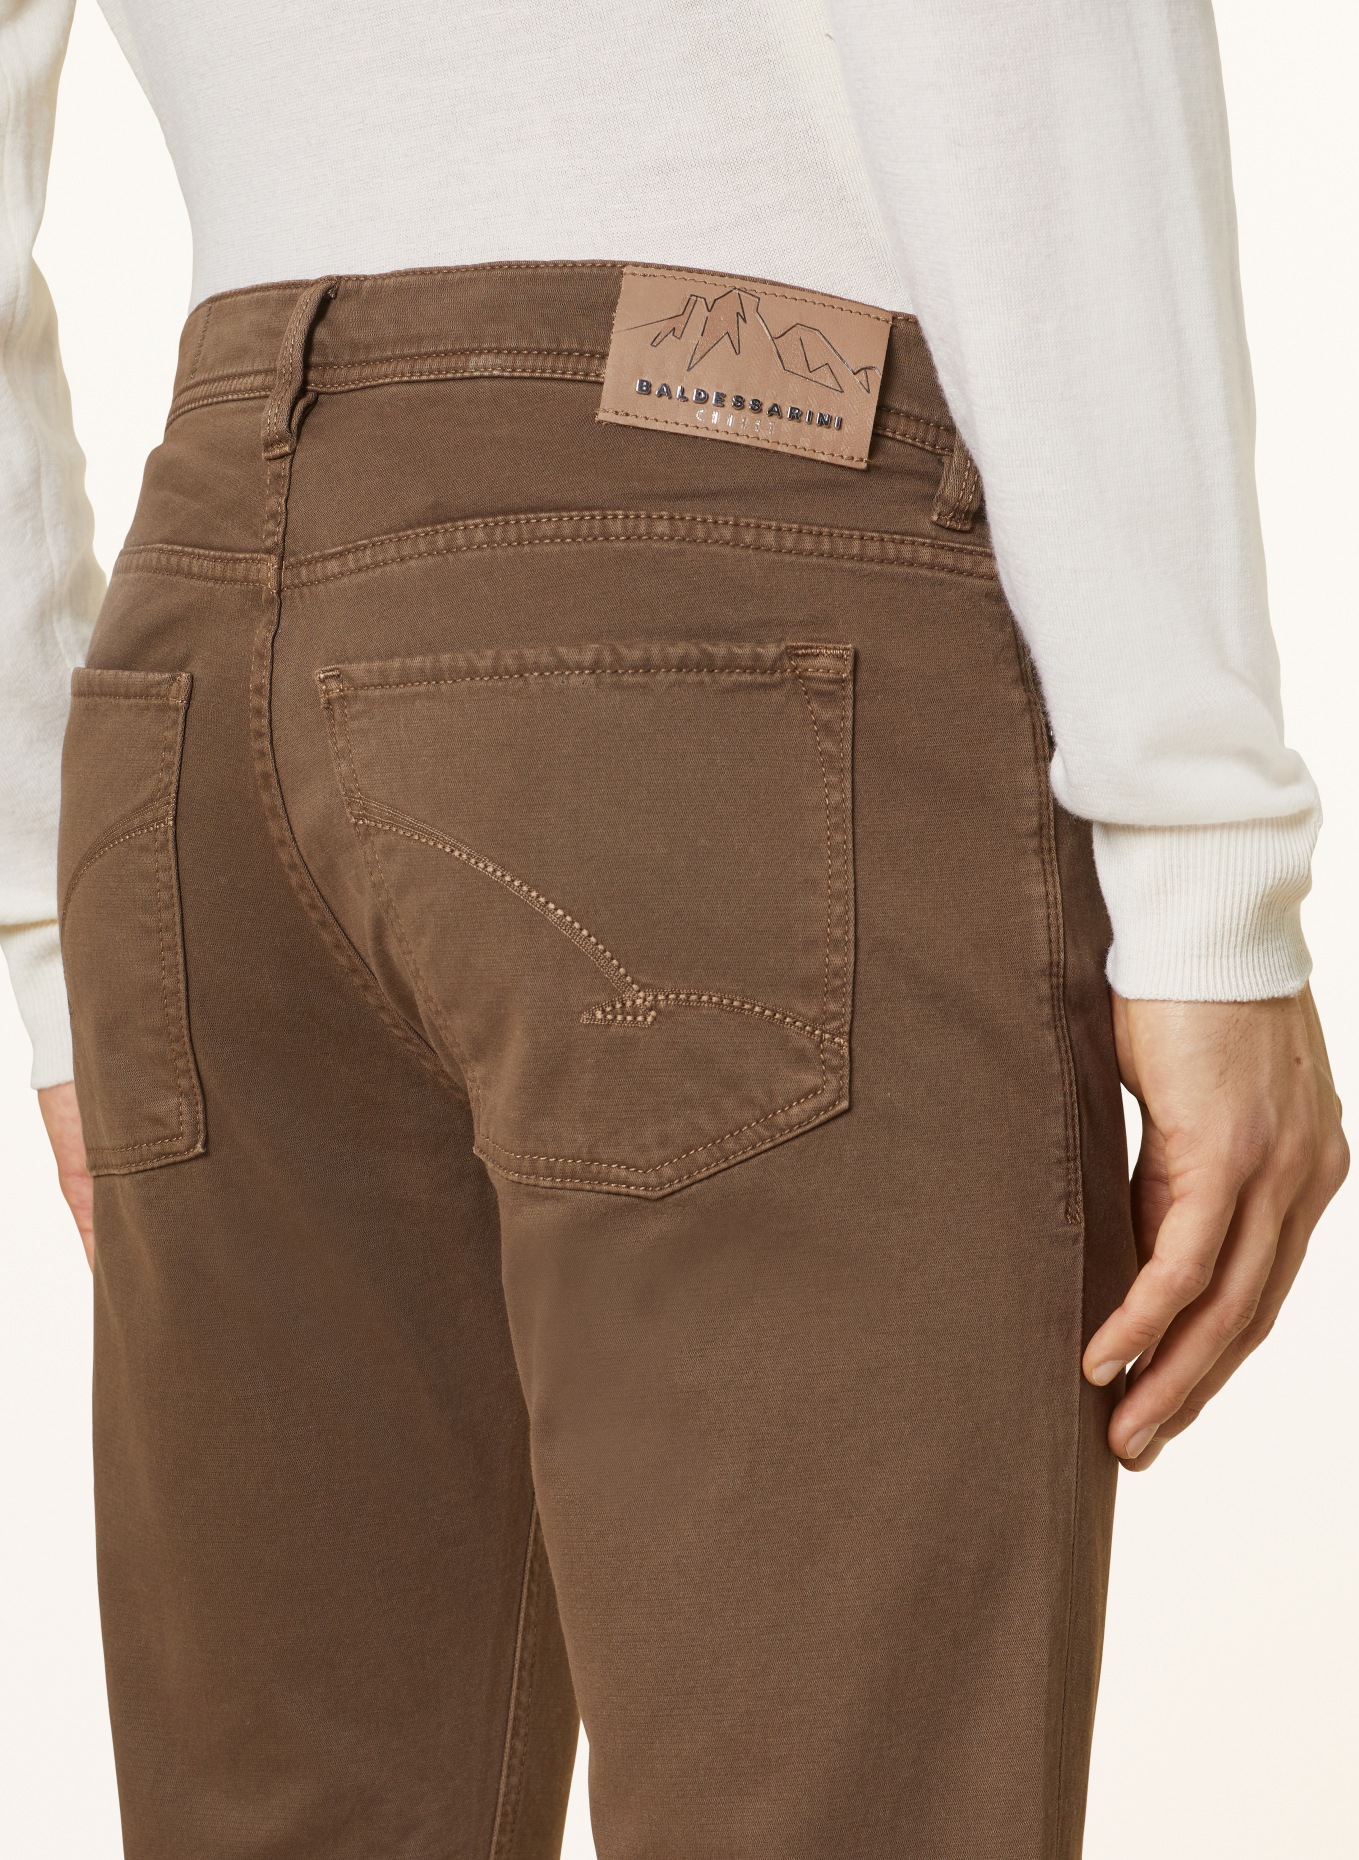 BALDESSARINI Trousers regular fit, Color: BROWN (Image 6)